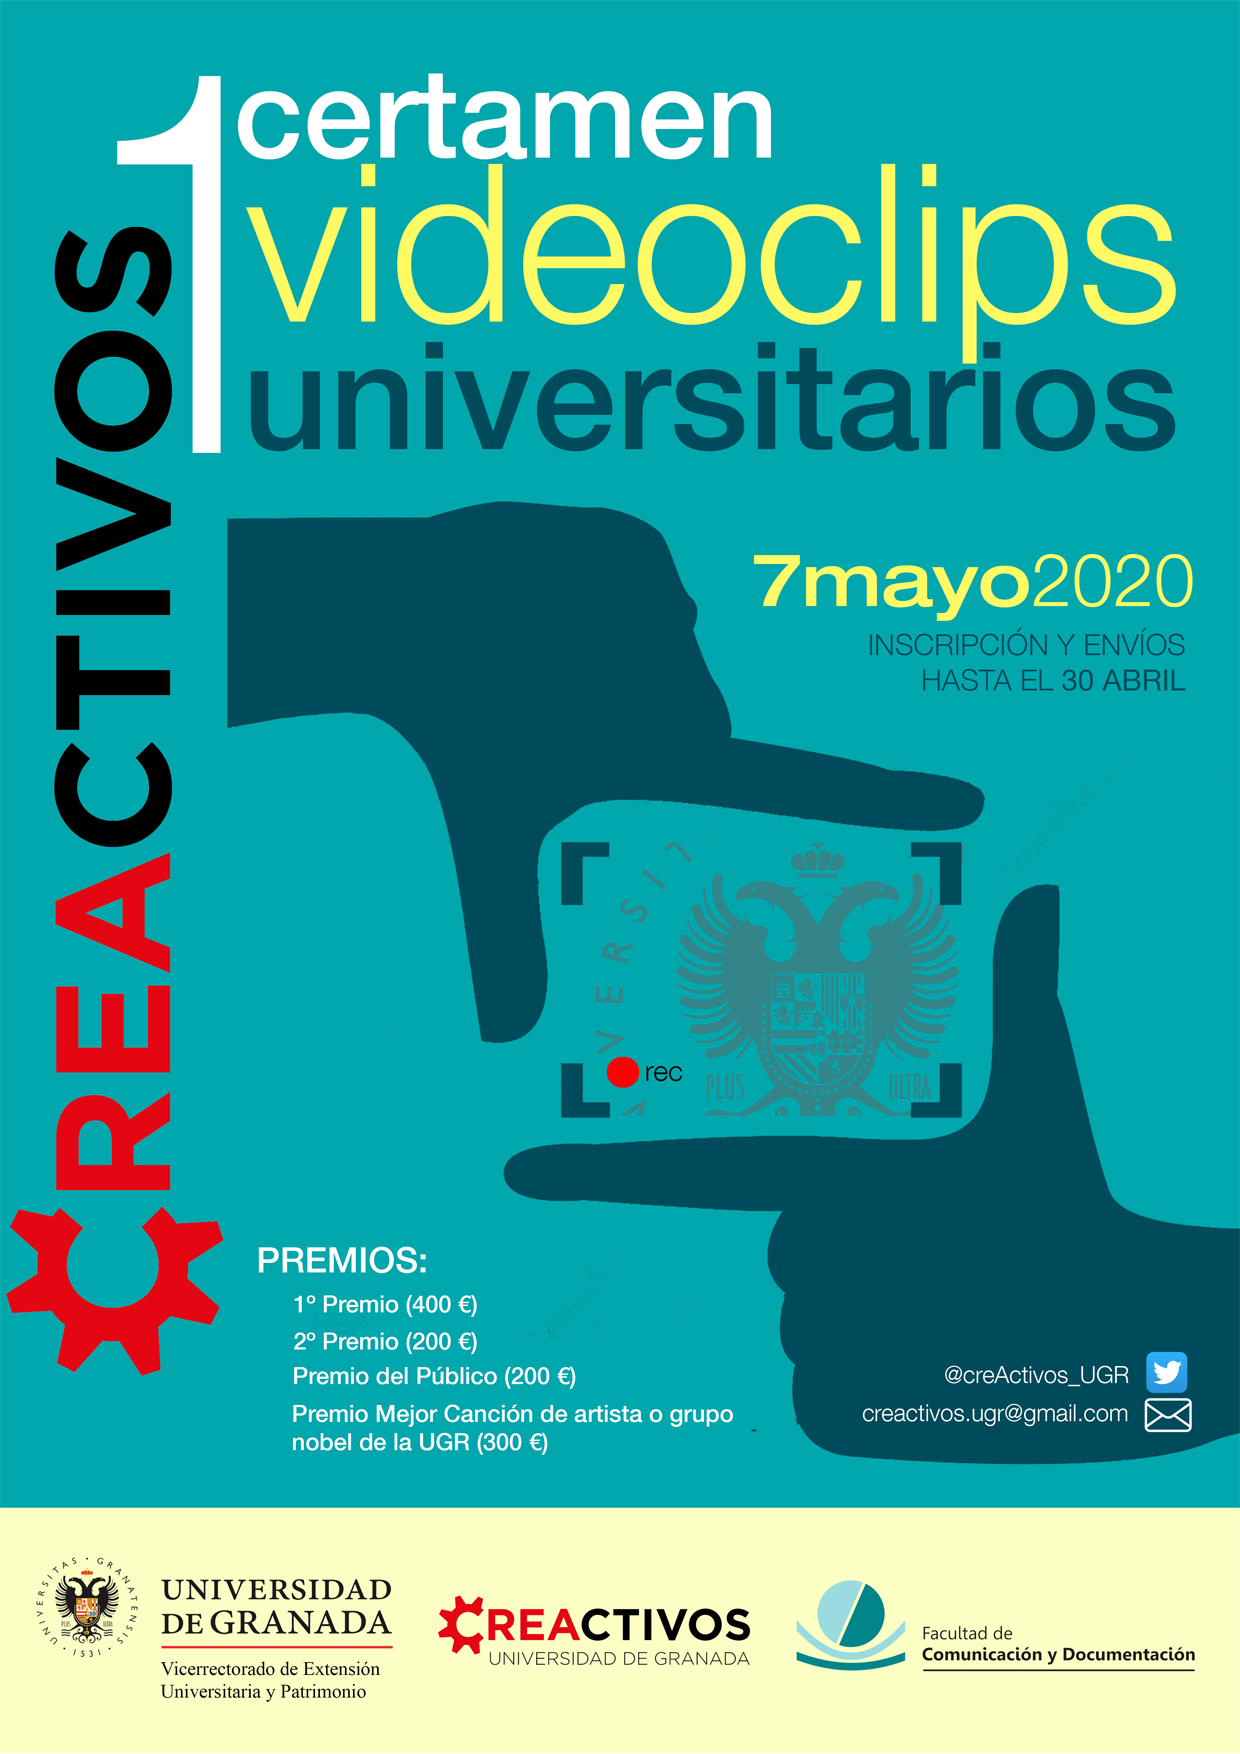 Portada del I Certamen de Videoclips Universitarios de la Universidad de Granada